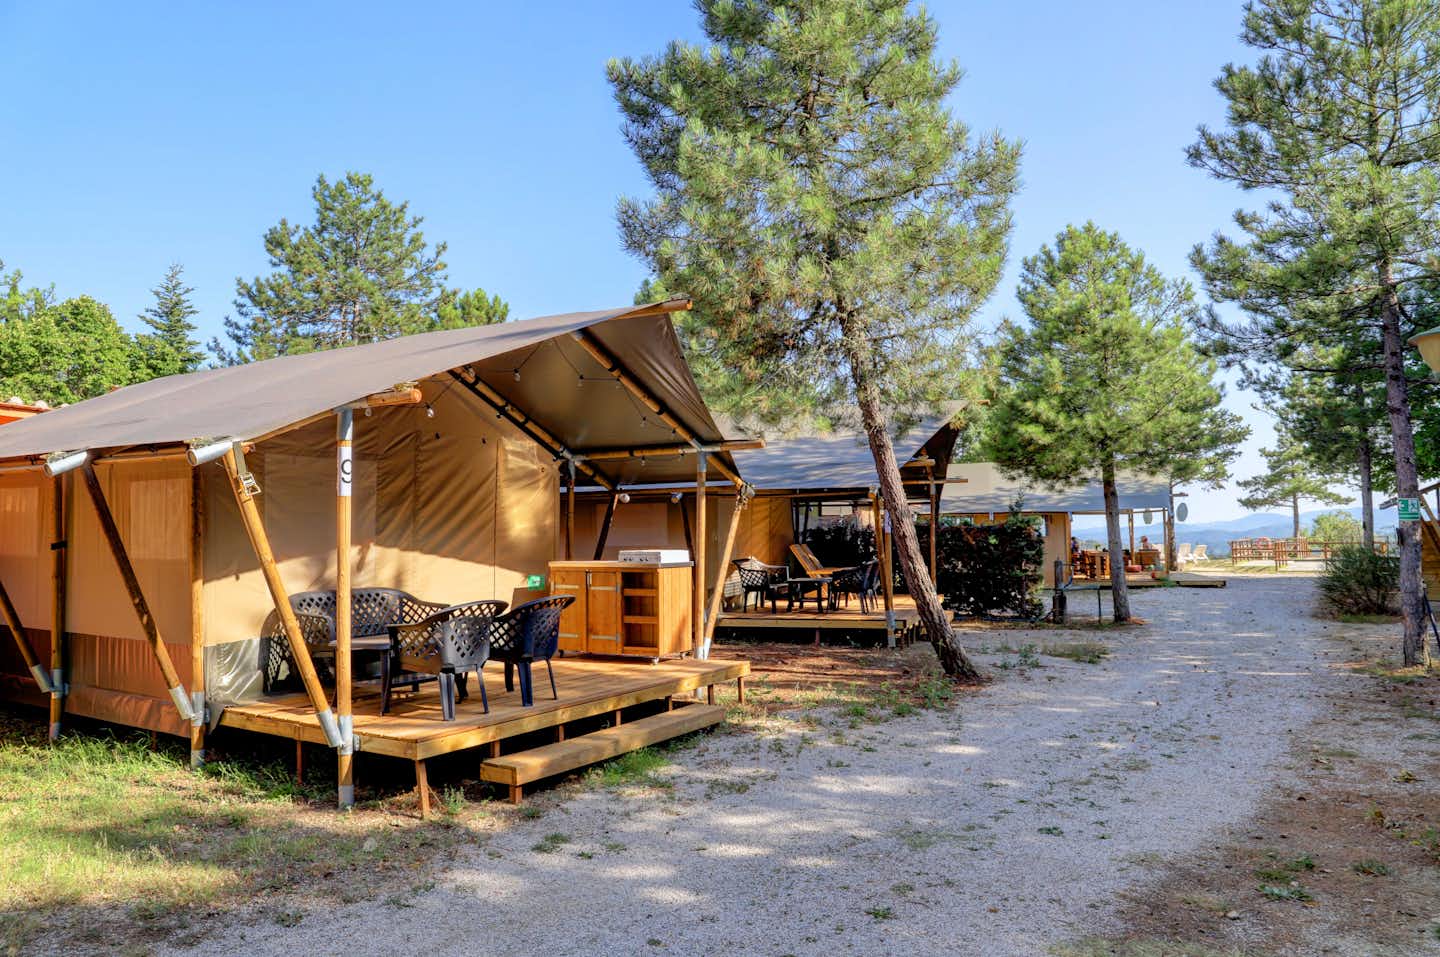 Vodatent @ Camping Luna del Monte - Glamping-Zelte auf dem Campingplatz